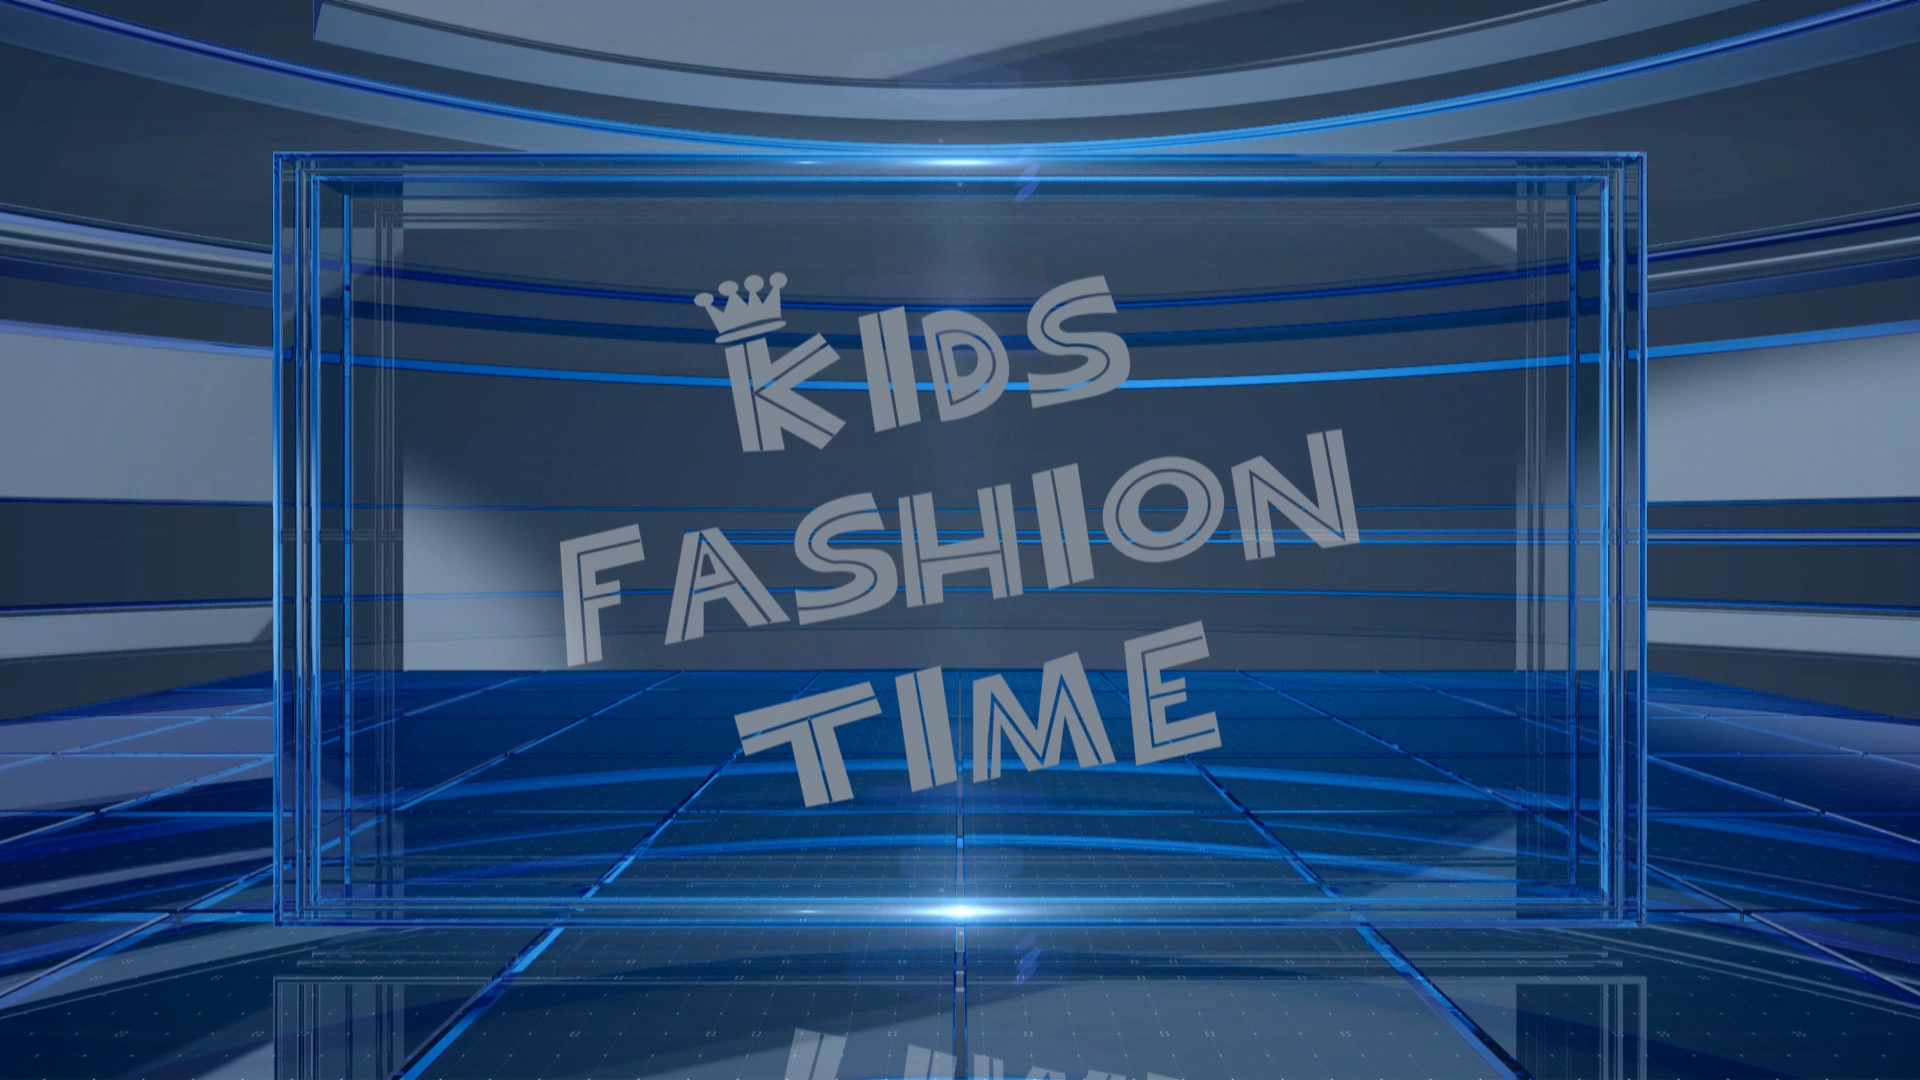 Kids fashion time